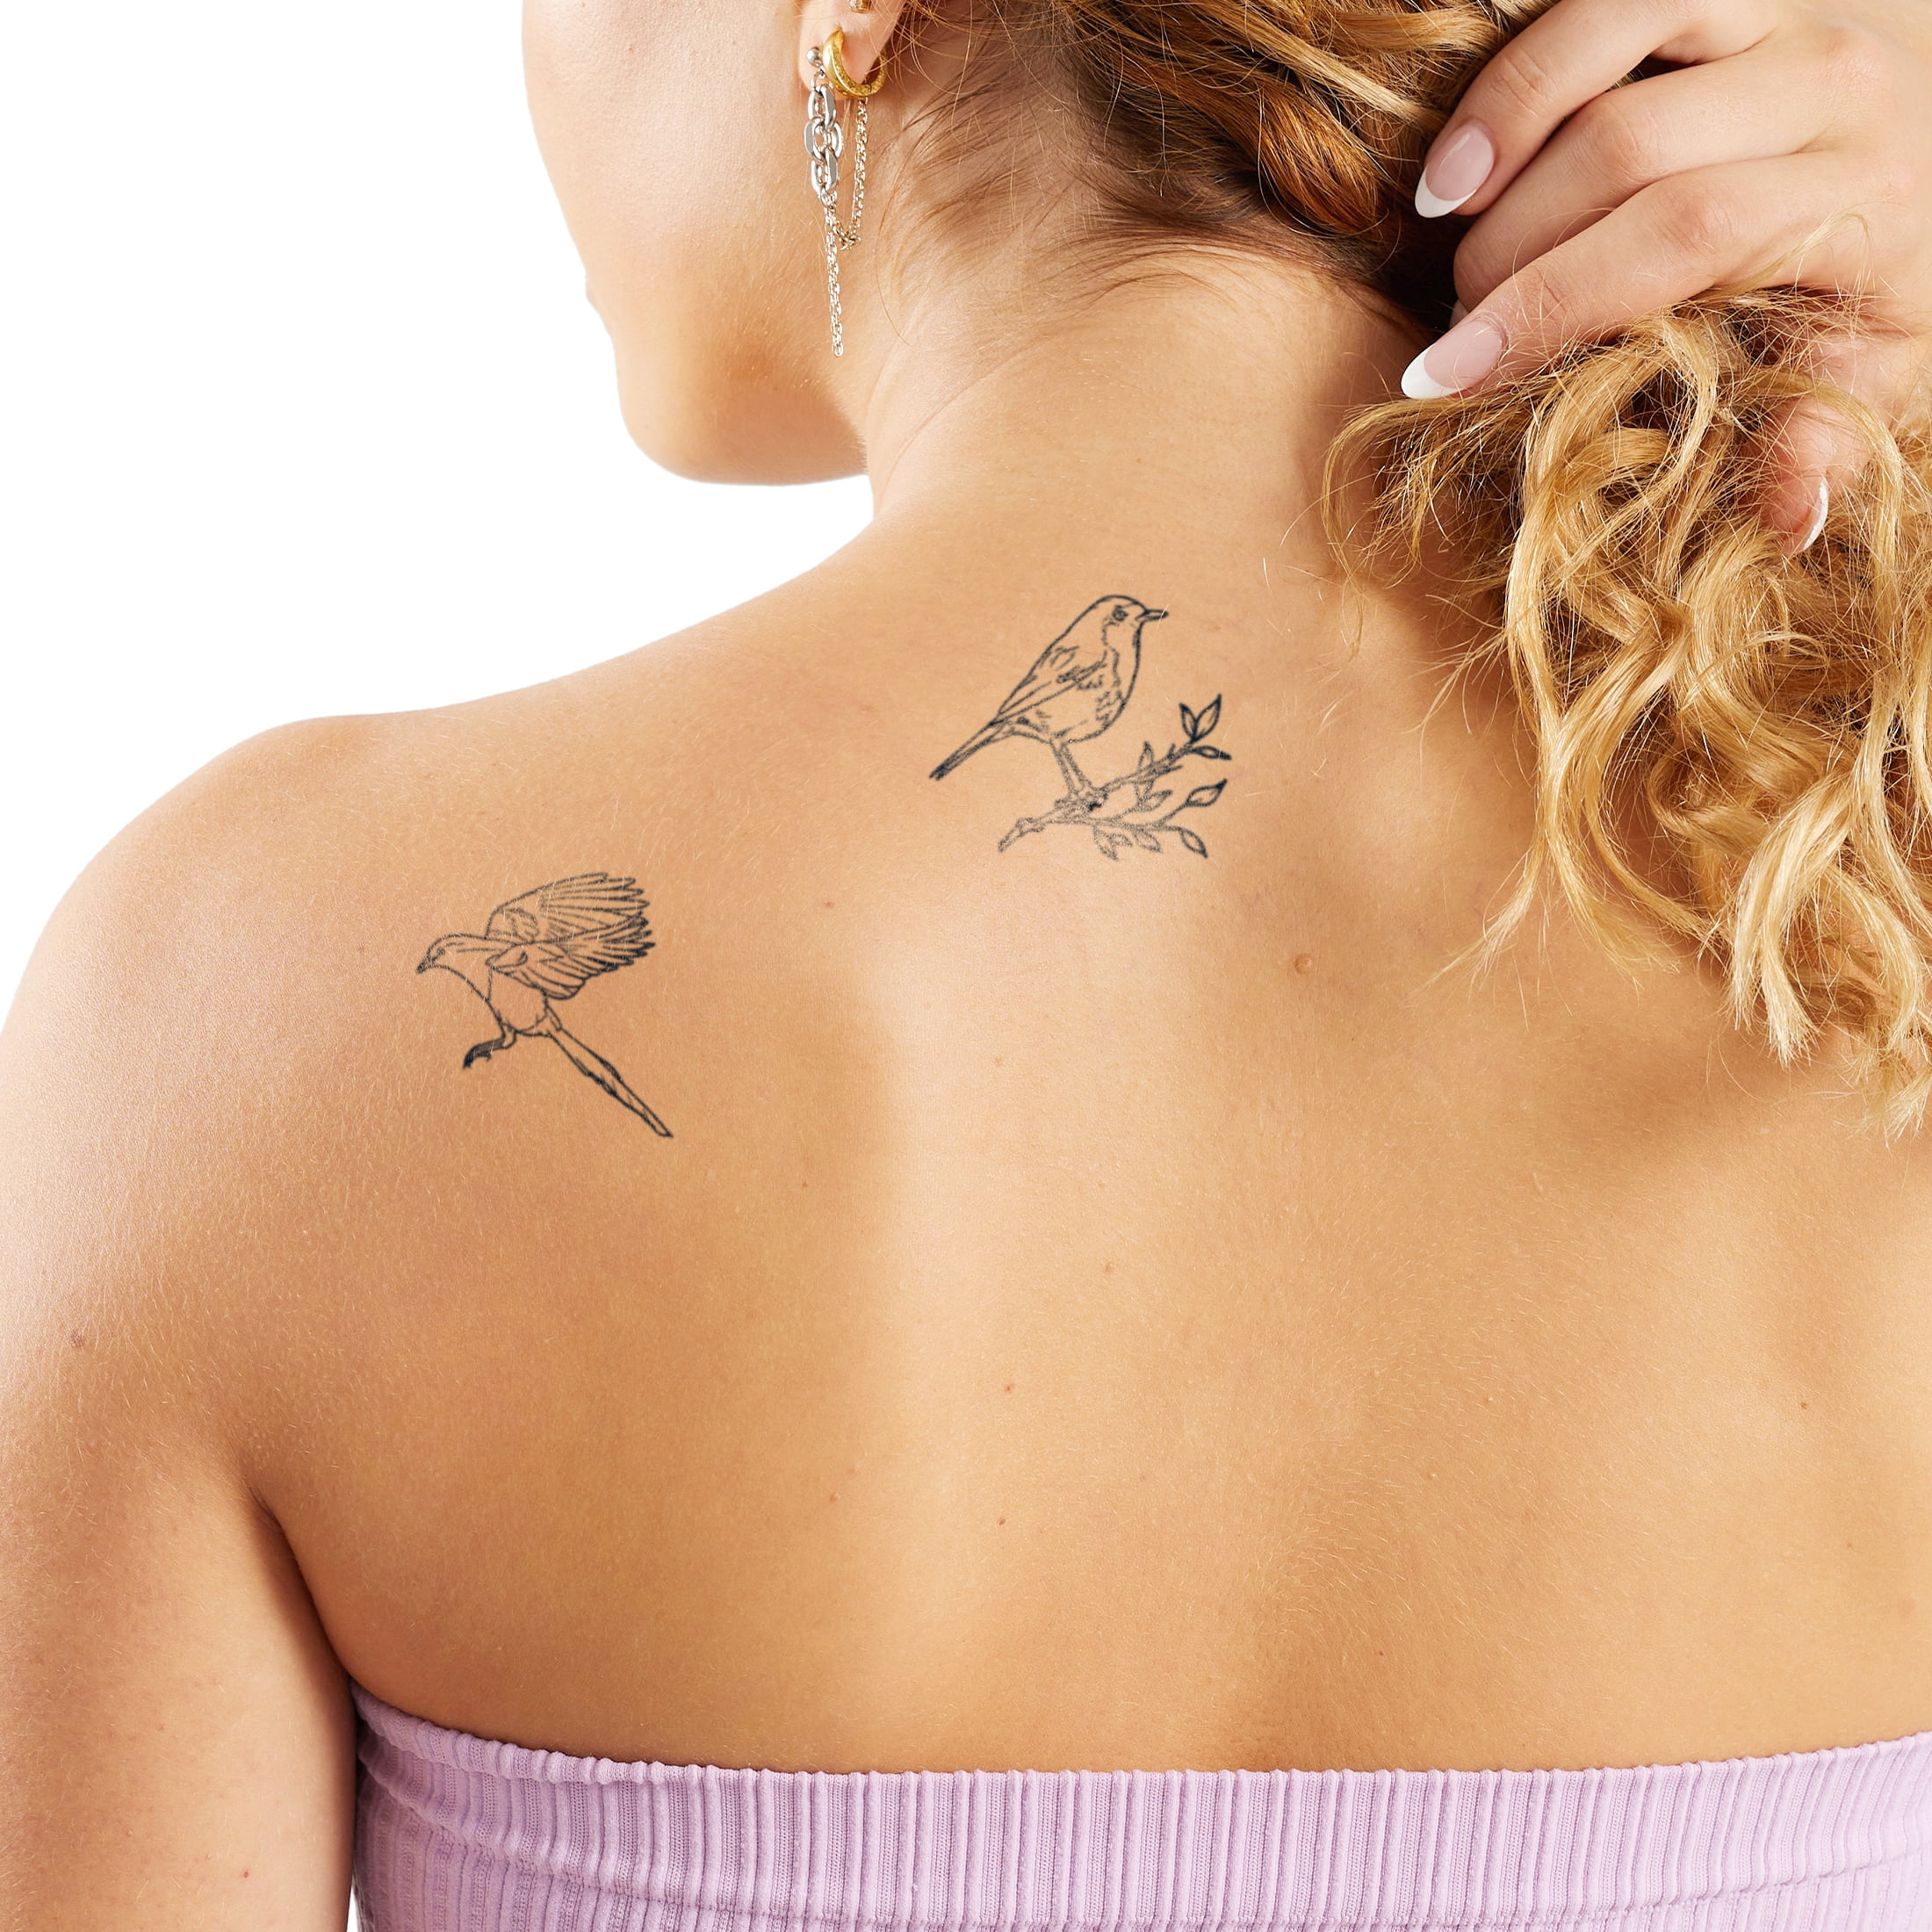 Phoenix bird tattoo on girl's neck - YouTube